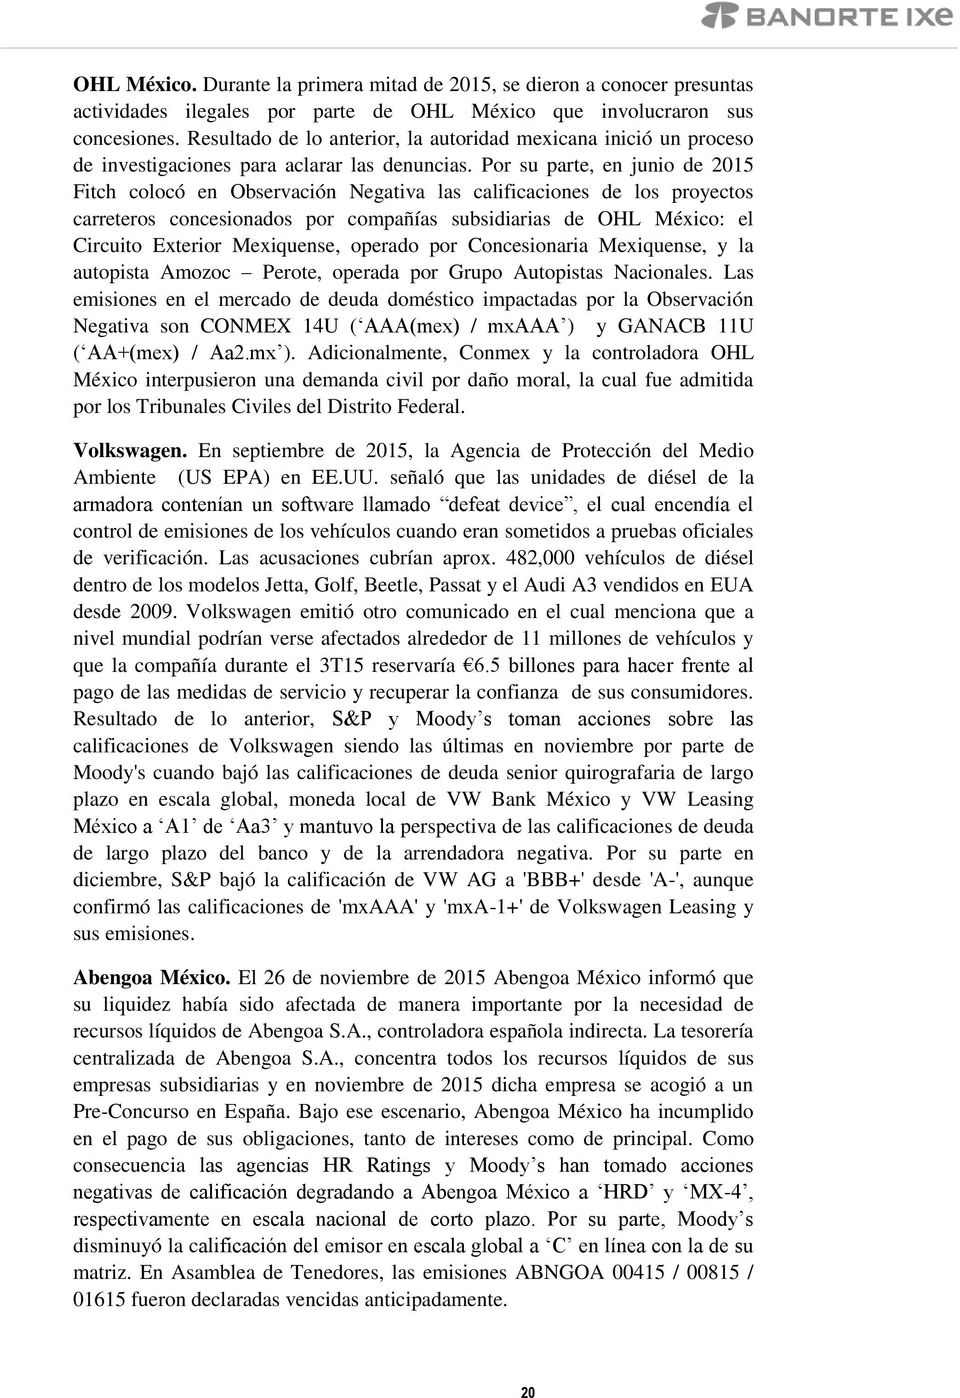 Por su parte, en junio de 2015 Fitch colocó en Observación Negativa las calificaciones de los proyectos carreteros concesionados por compañías subsidiarias de OHL México: el Circuito Exterior